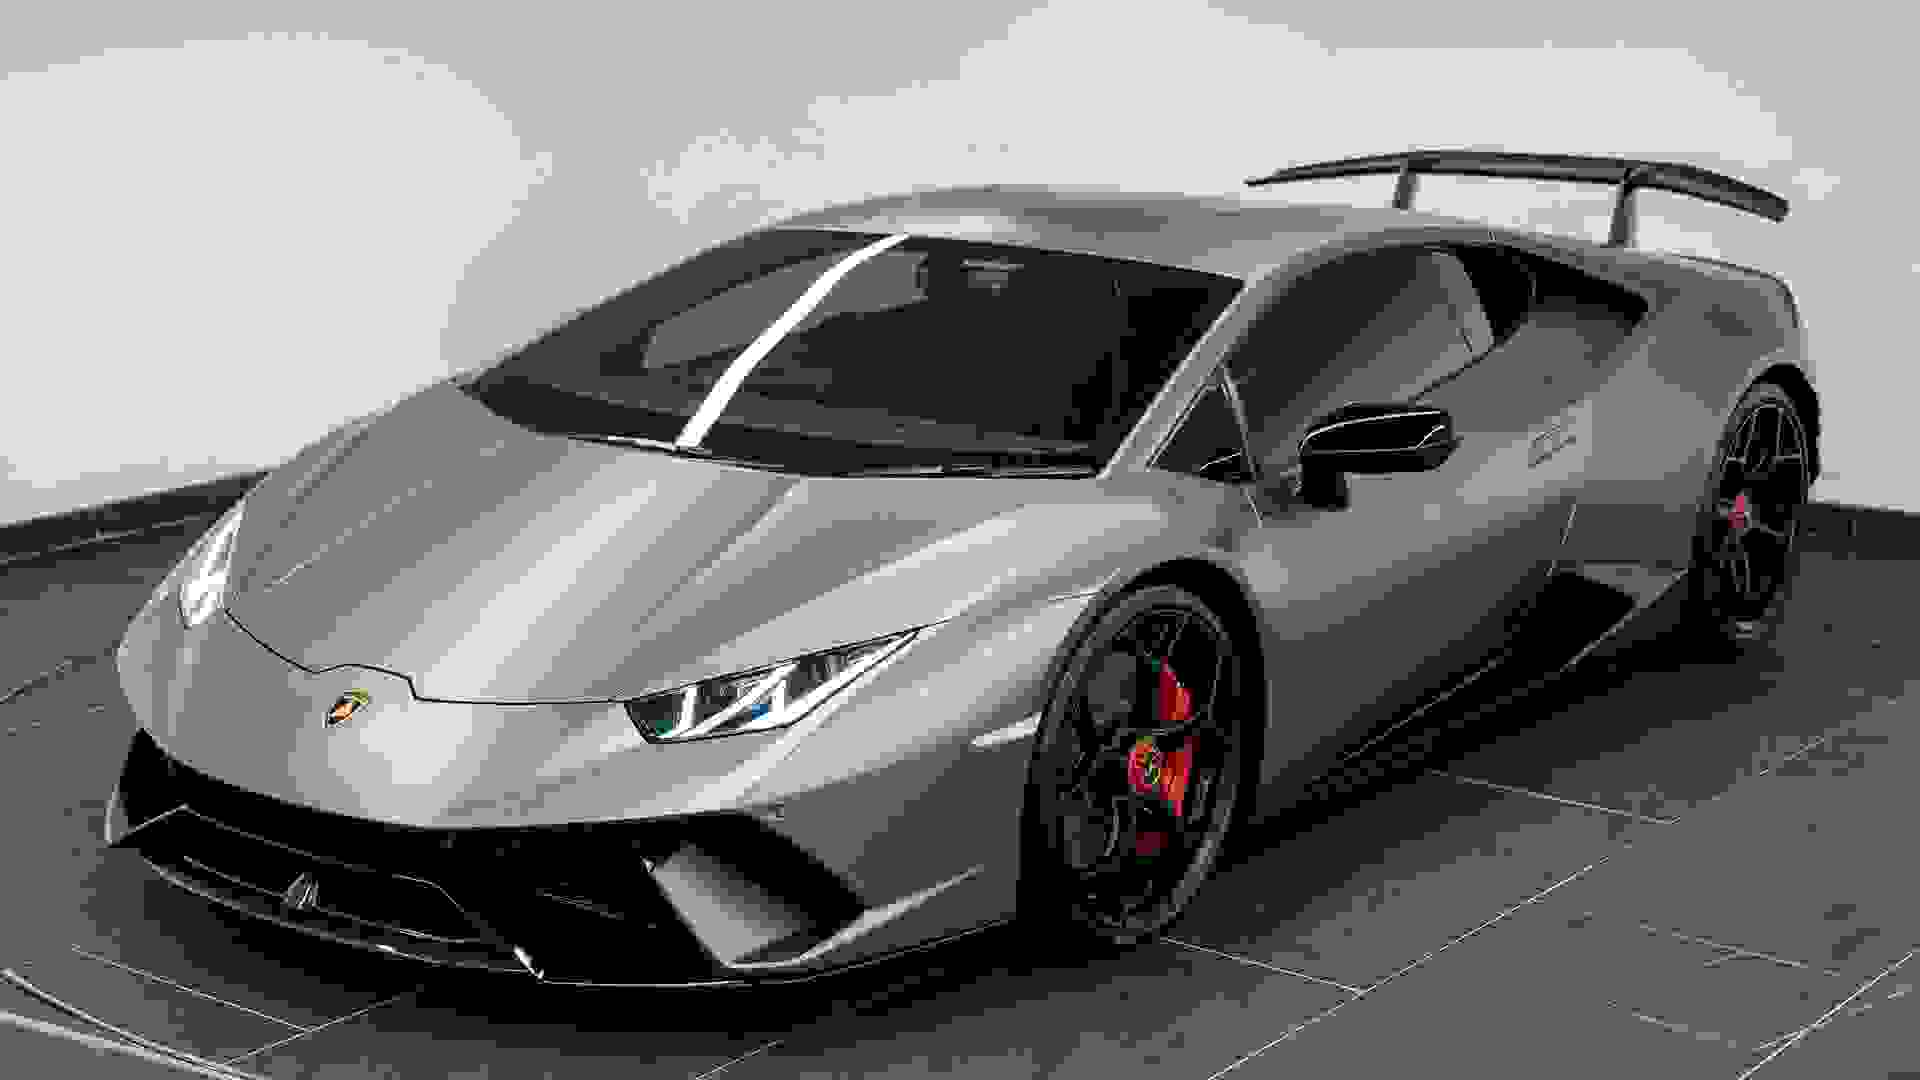 Lamborghini Huracan Photo 26b62298-a05d-4a35-9943-31117bfb4280.jpg